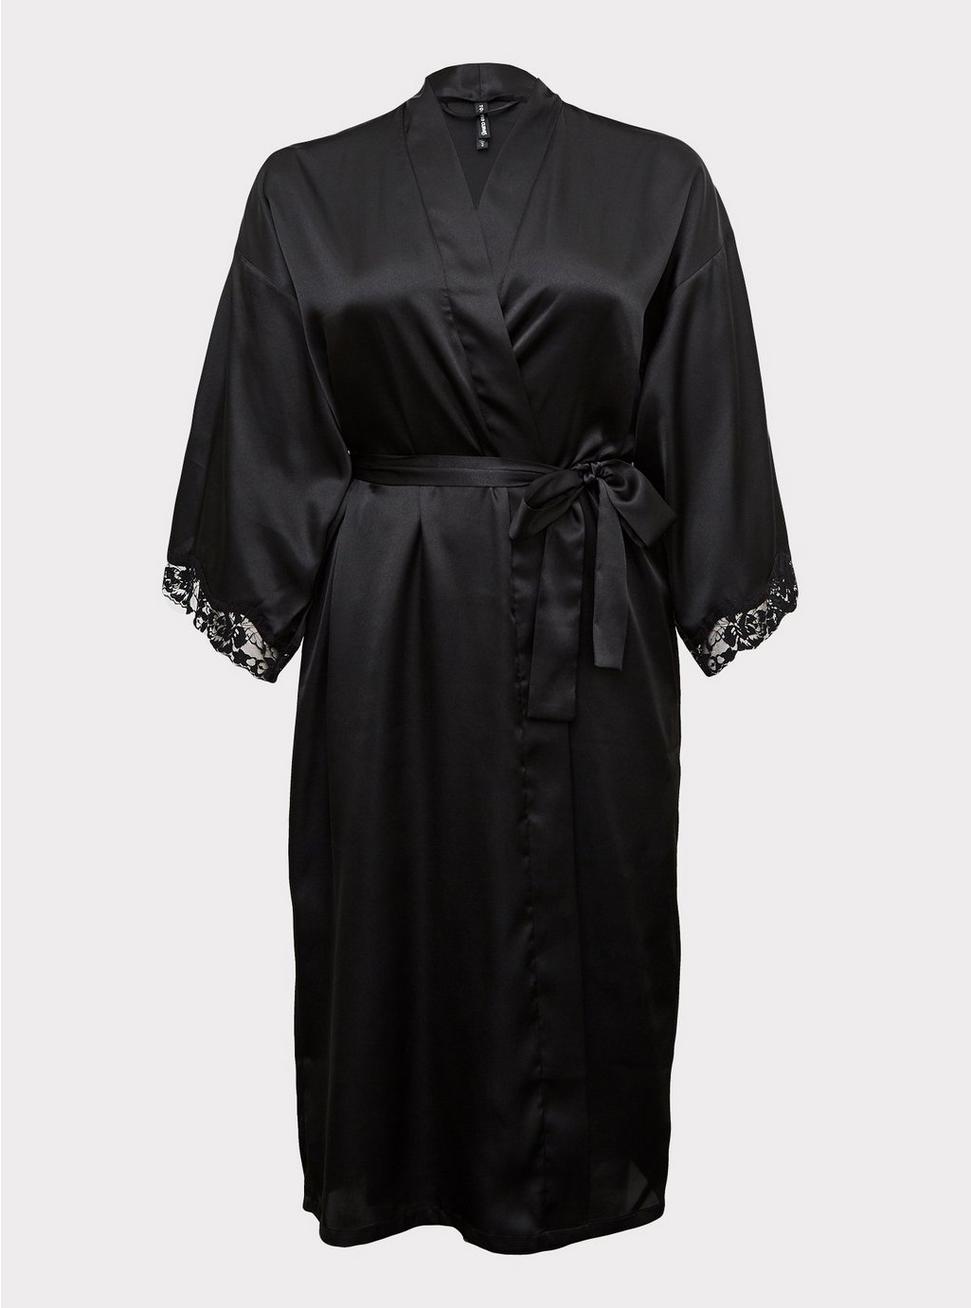 Plus Size Satin Long Lingerie Robe, RICH BLACK, hi-res